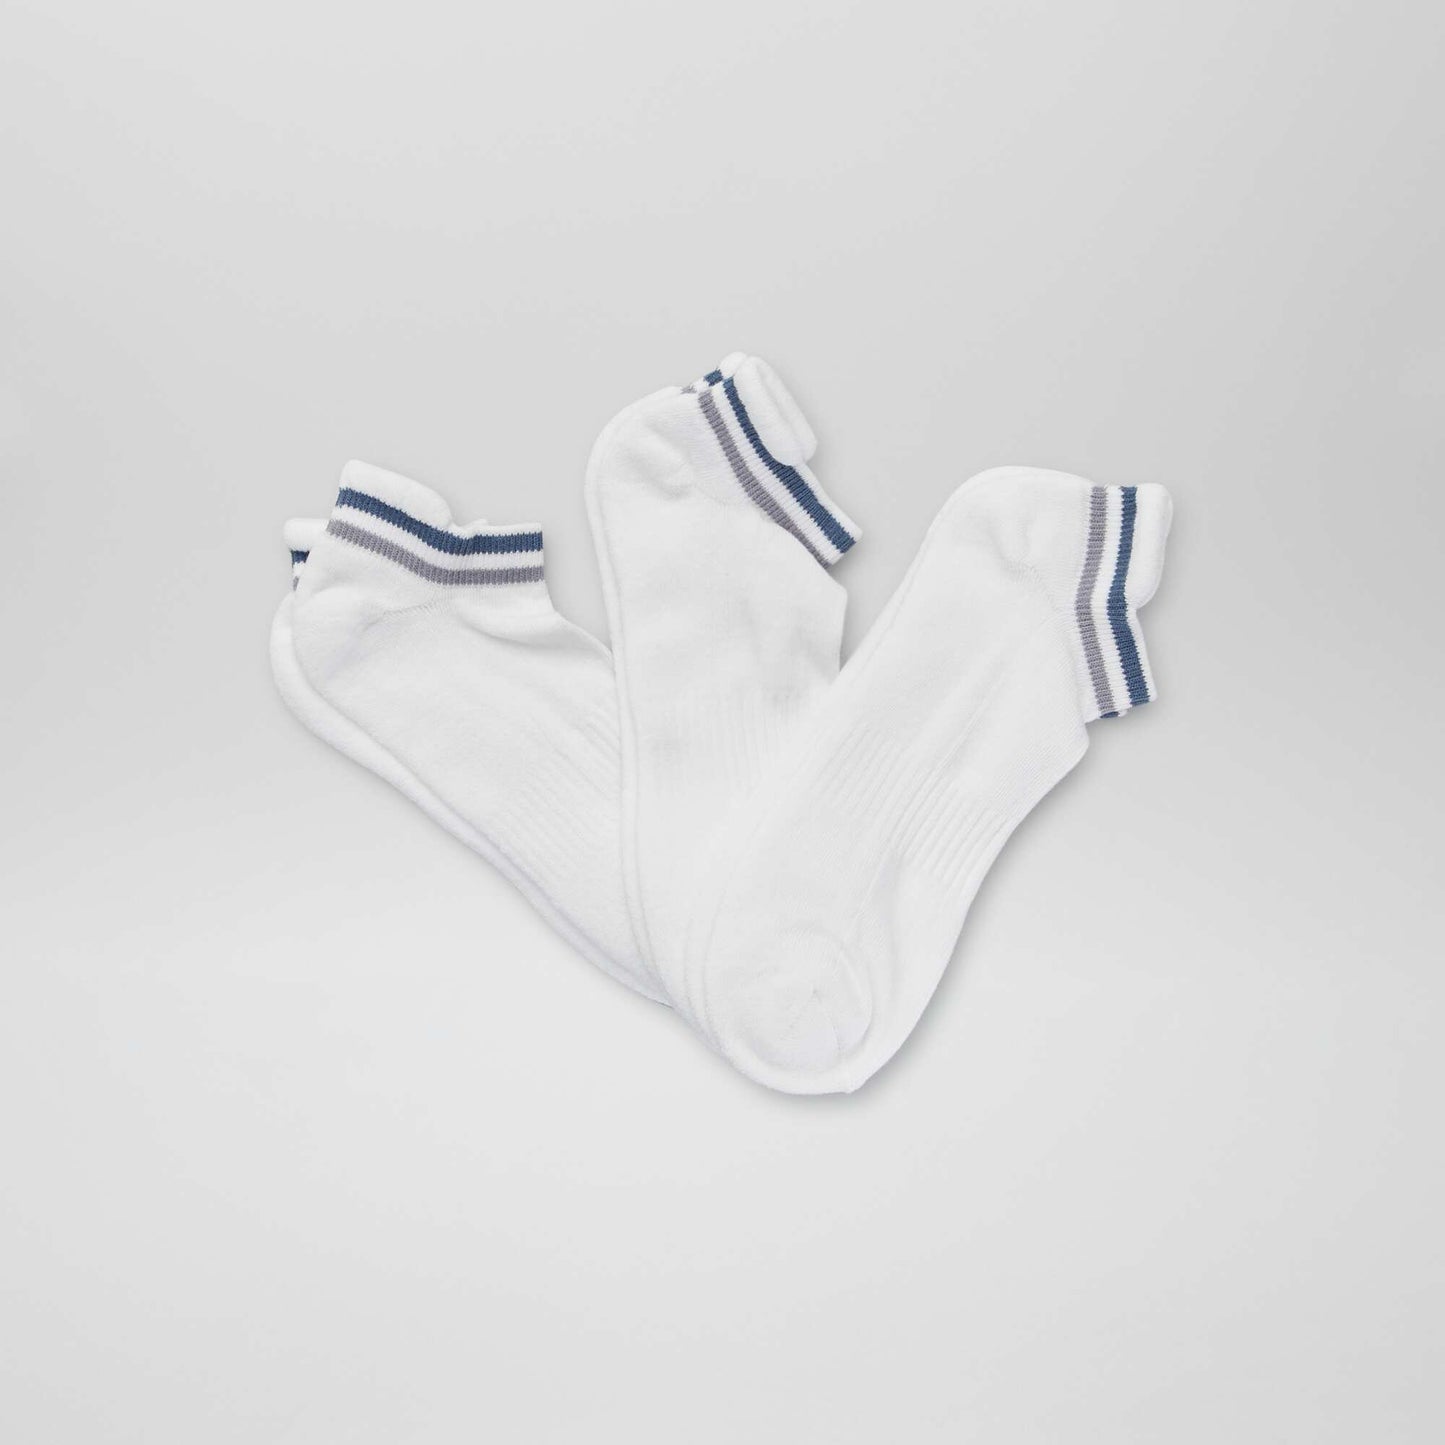 Chaussettes de sport invisibles - Lot de 3 Blanc/bleu